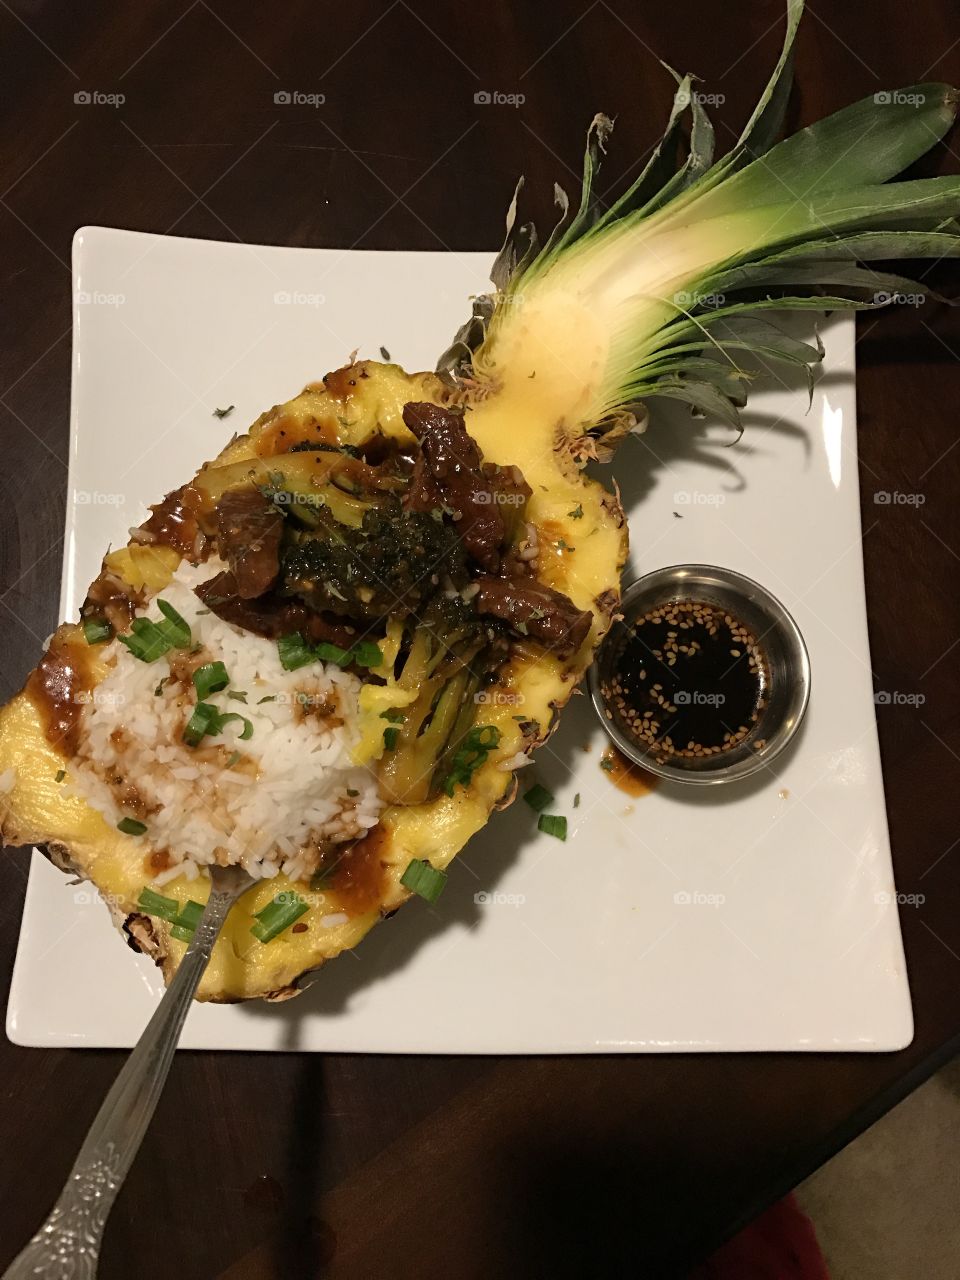 Teriyaki beef in a half pineapple. Dinner. 